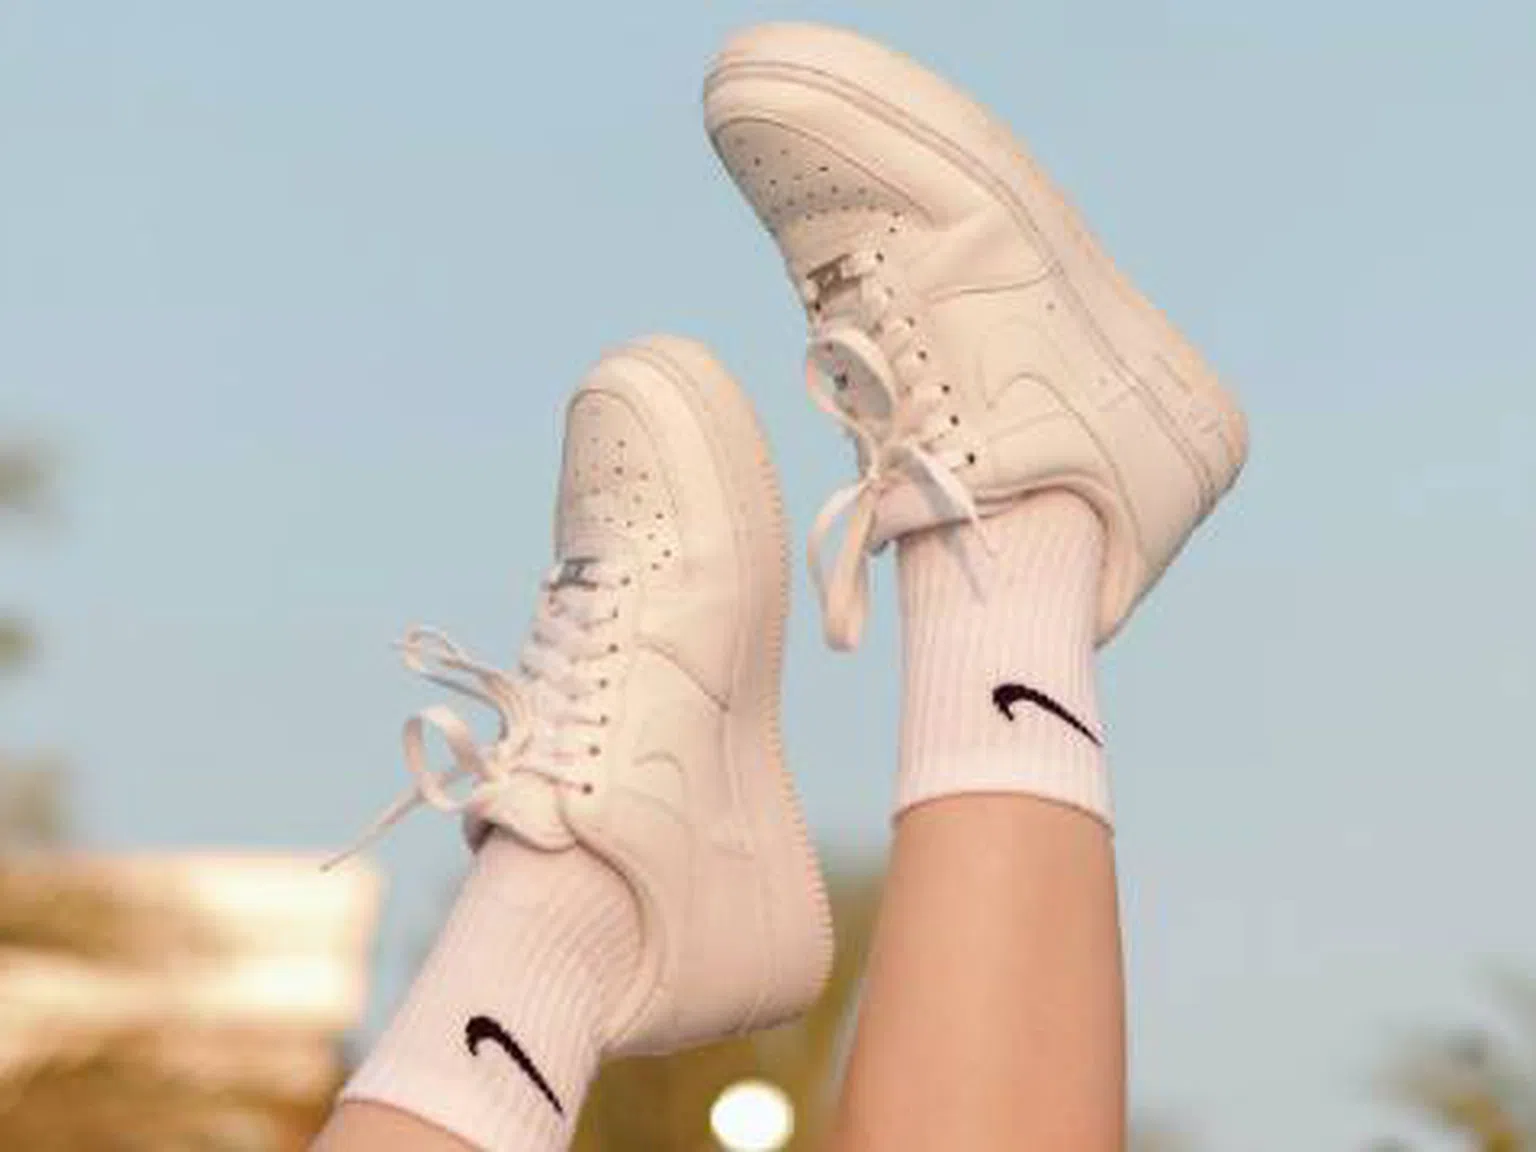 Nike - оригинален дизайн от премиум бранд. Вижте какъв модел обувки да изберете този сезон!